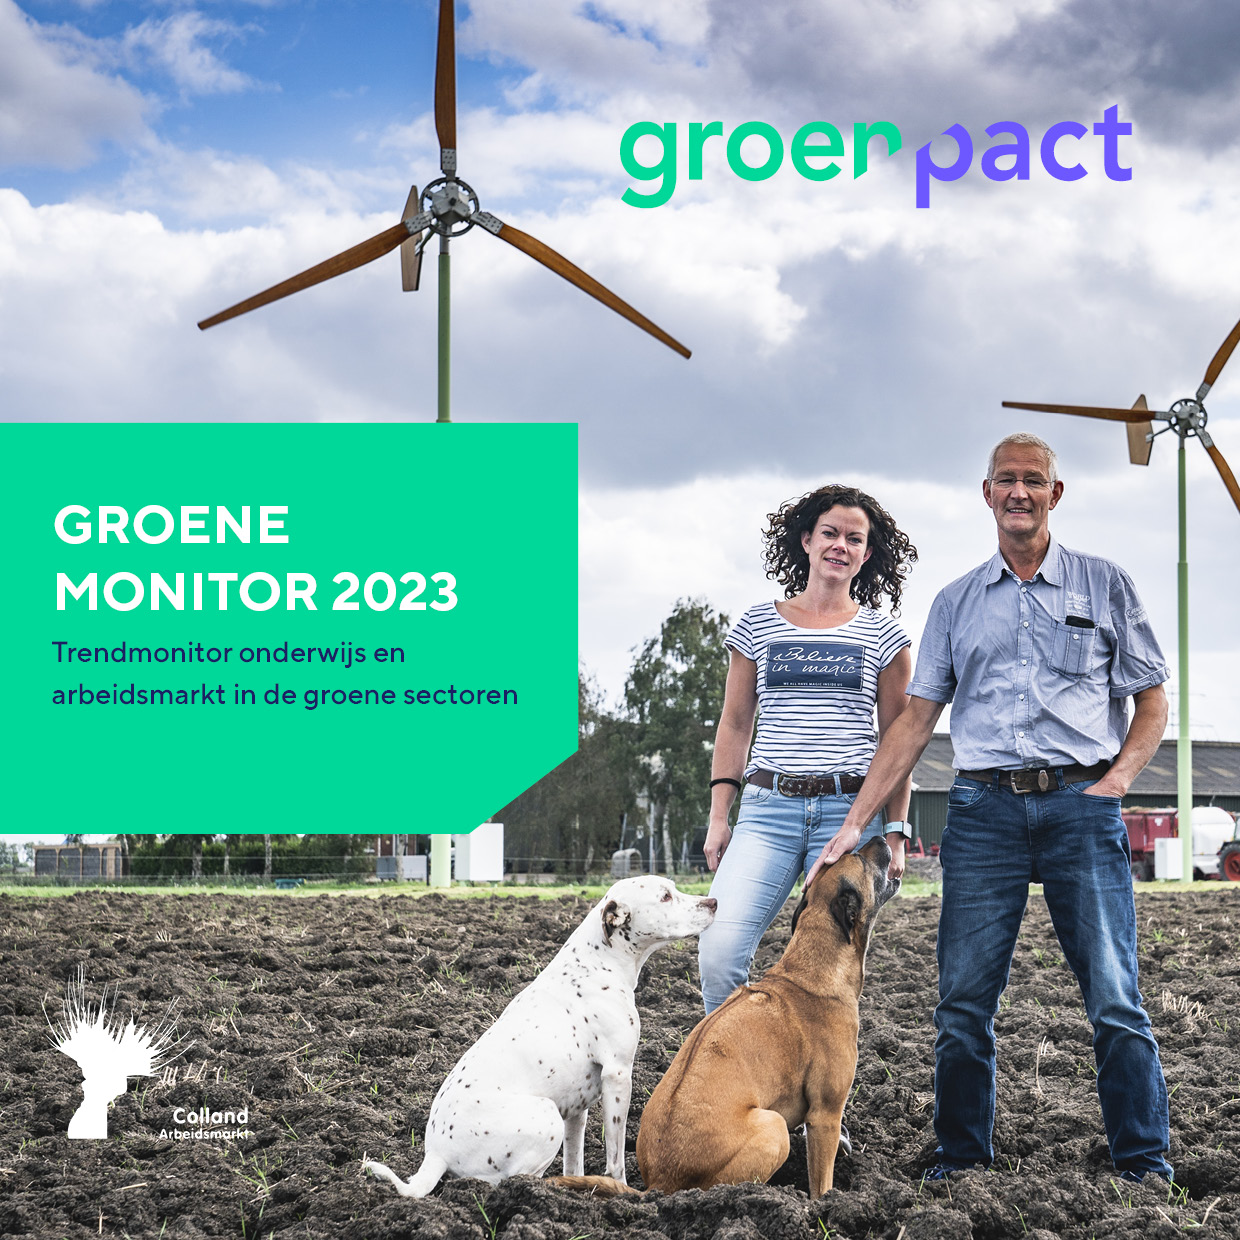 De voorzijde van de groene monitor 2023